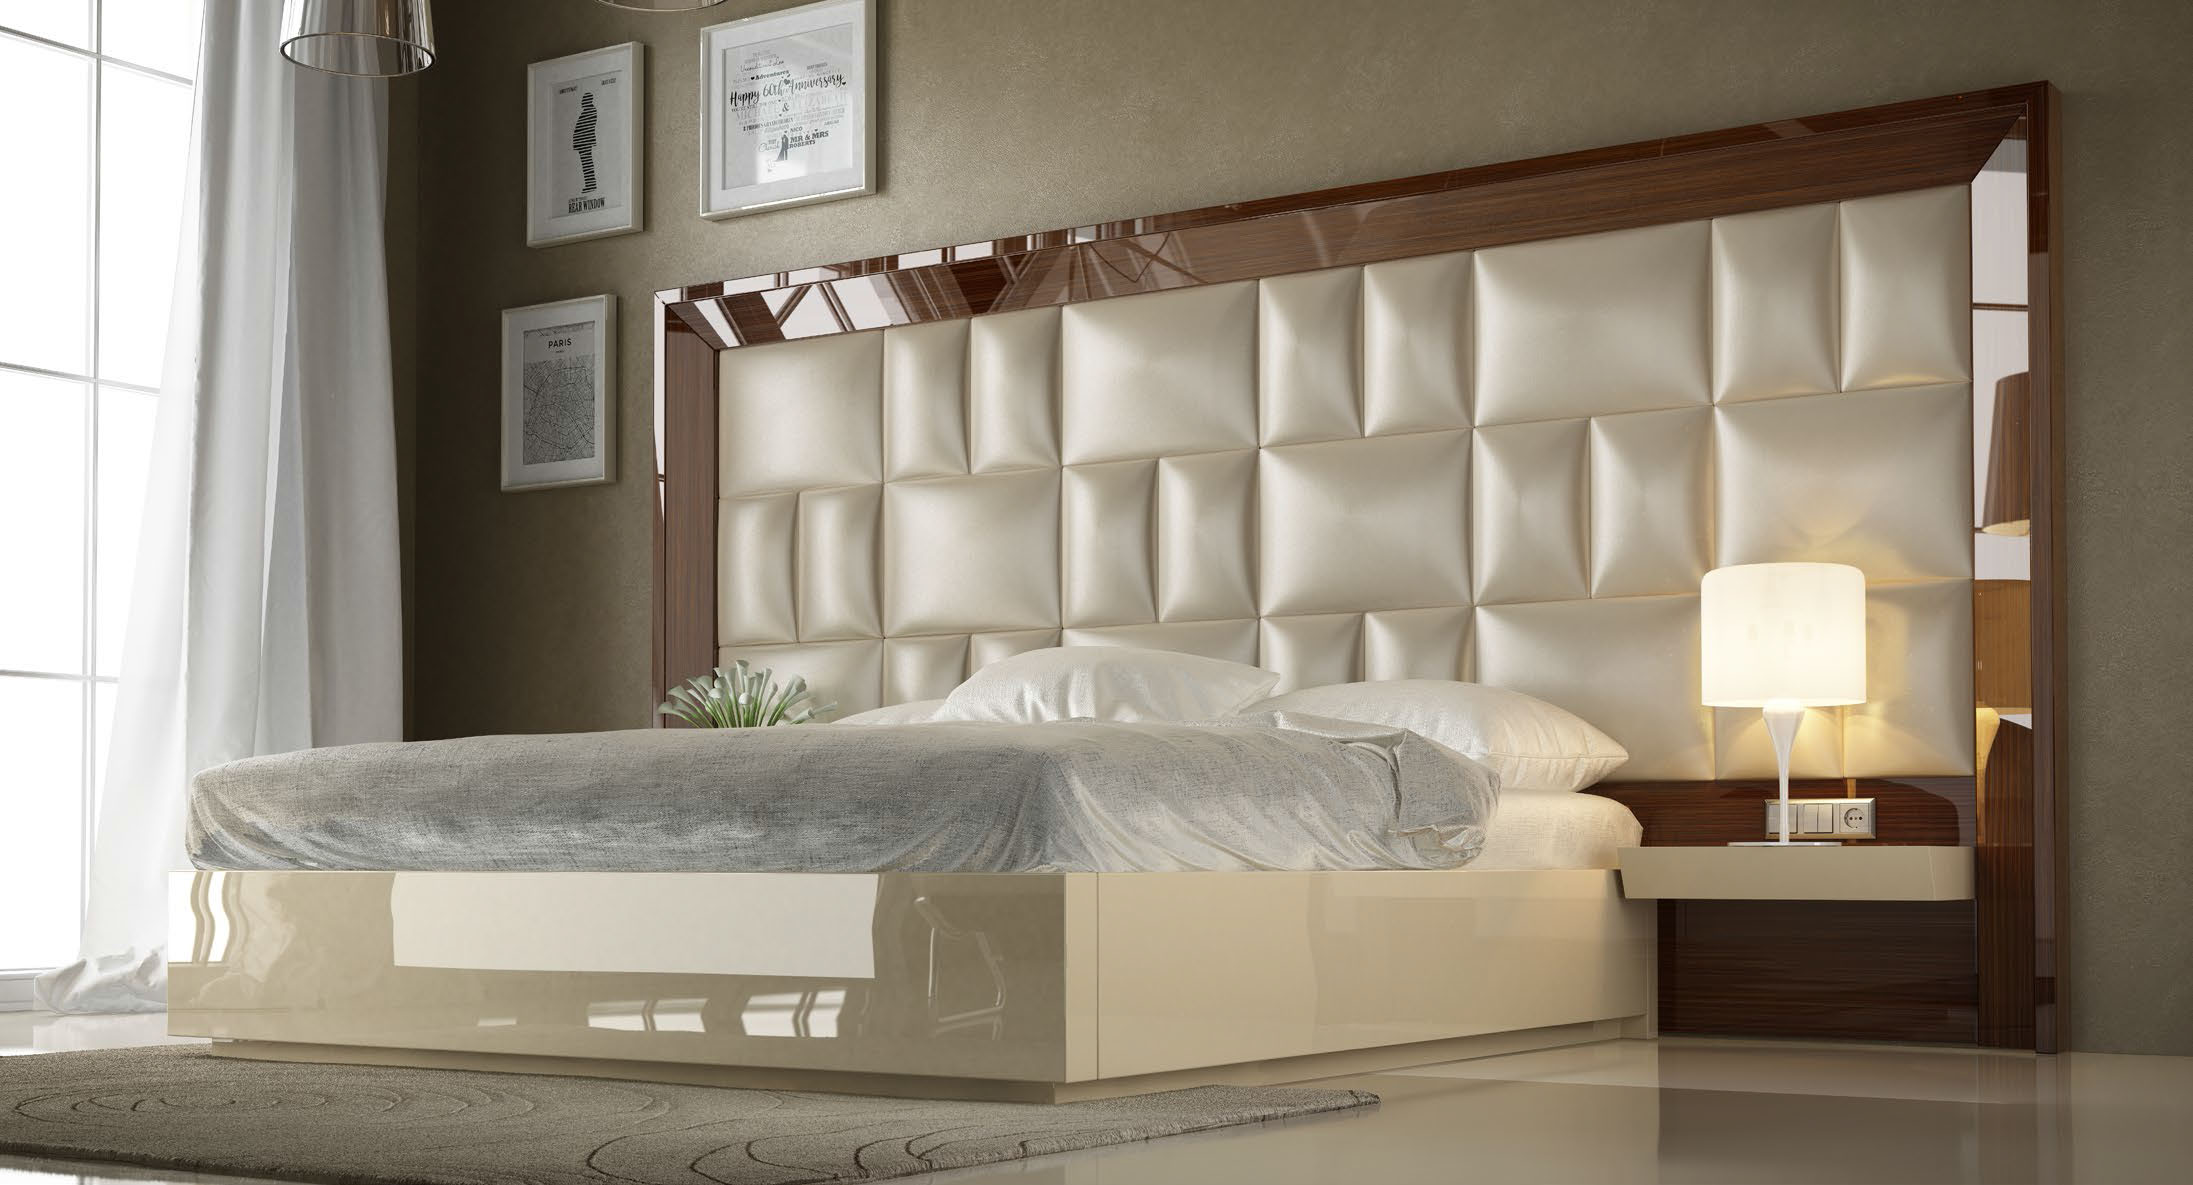 Brands Franco Furniture Avanty Bedrooms, Spain DOR 132